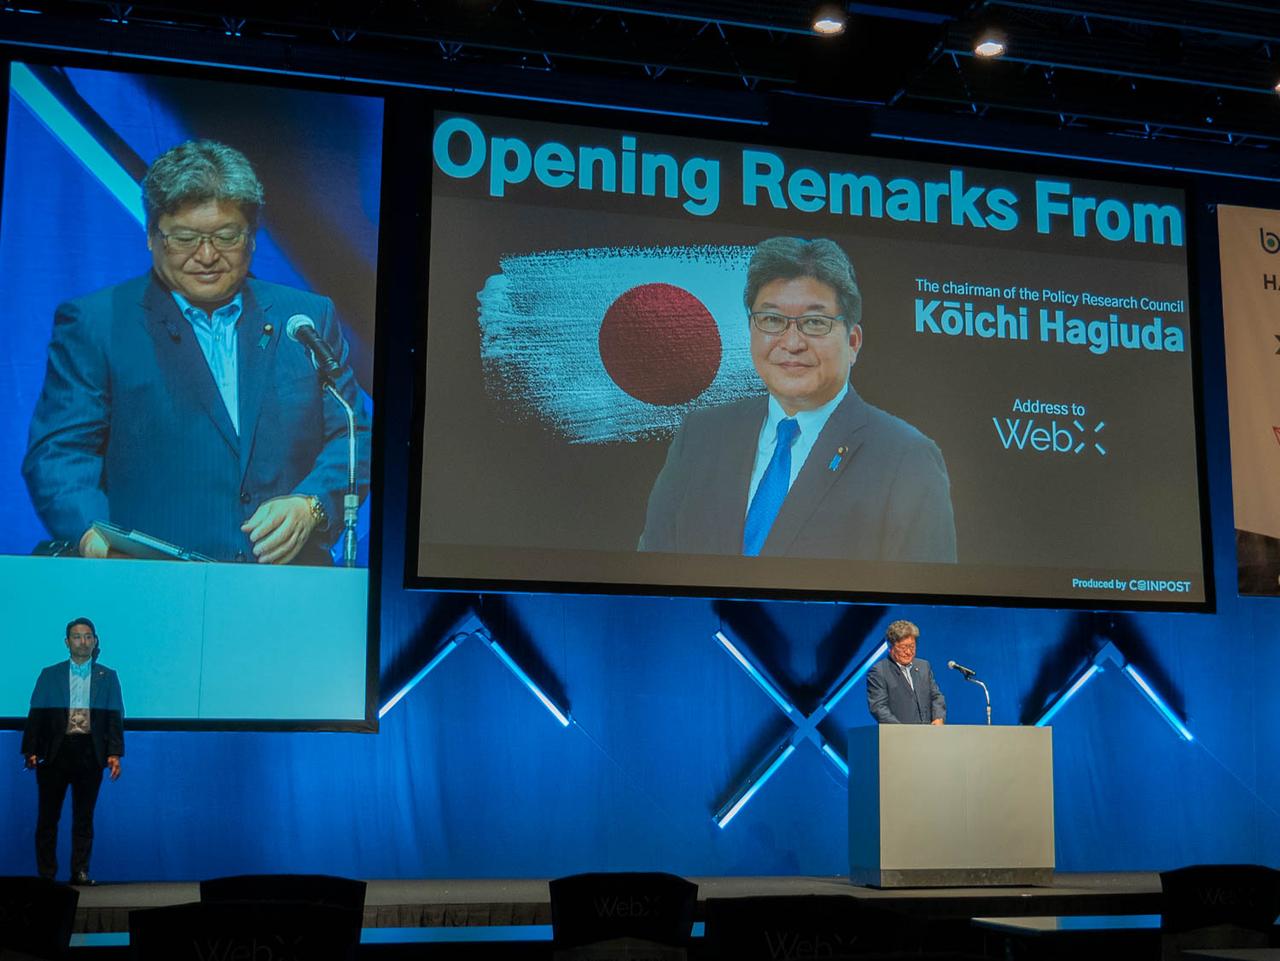 Koichi Hagiuda, Chairman of the Policy Research Council